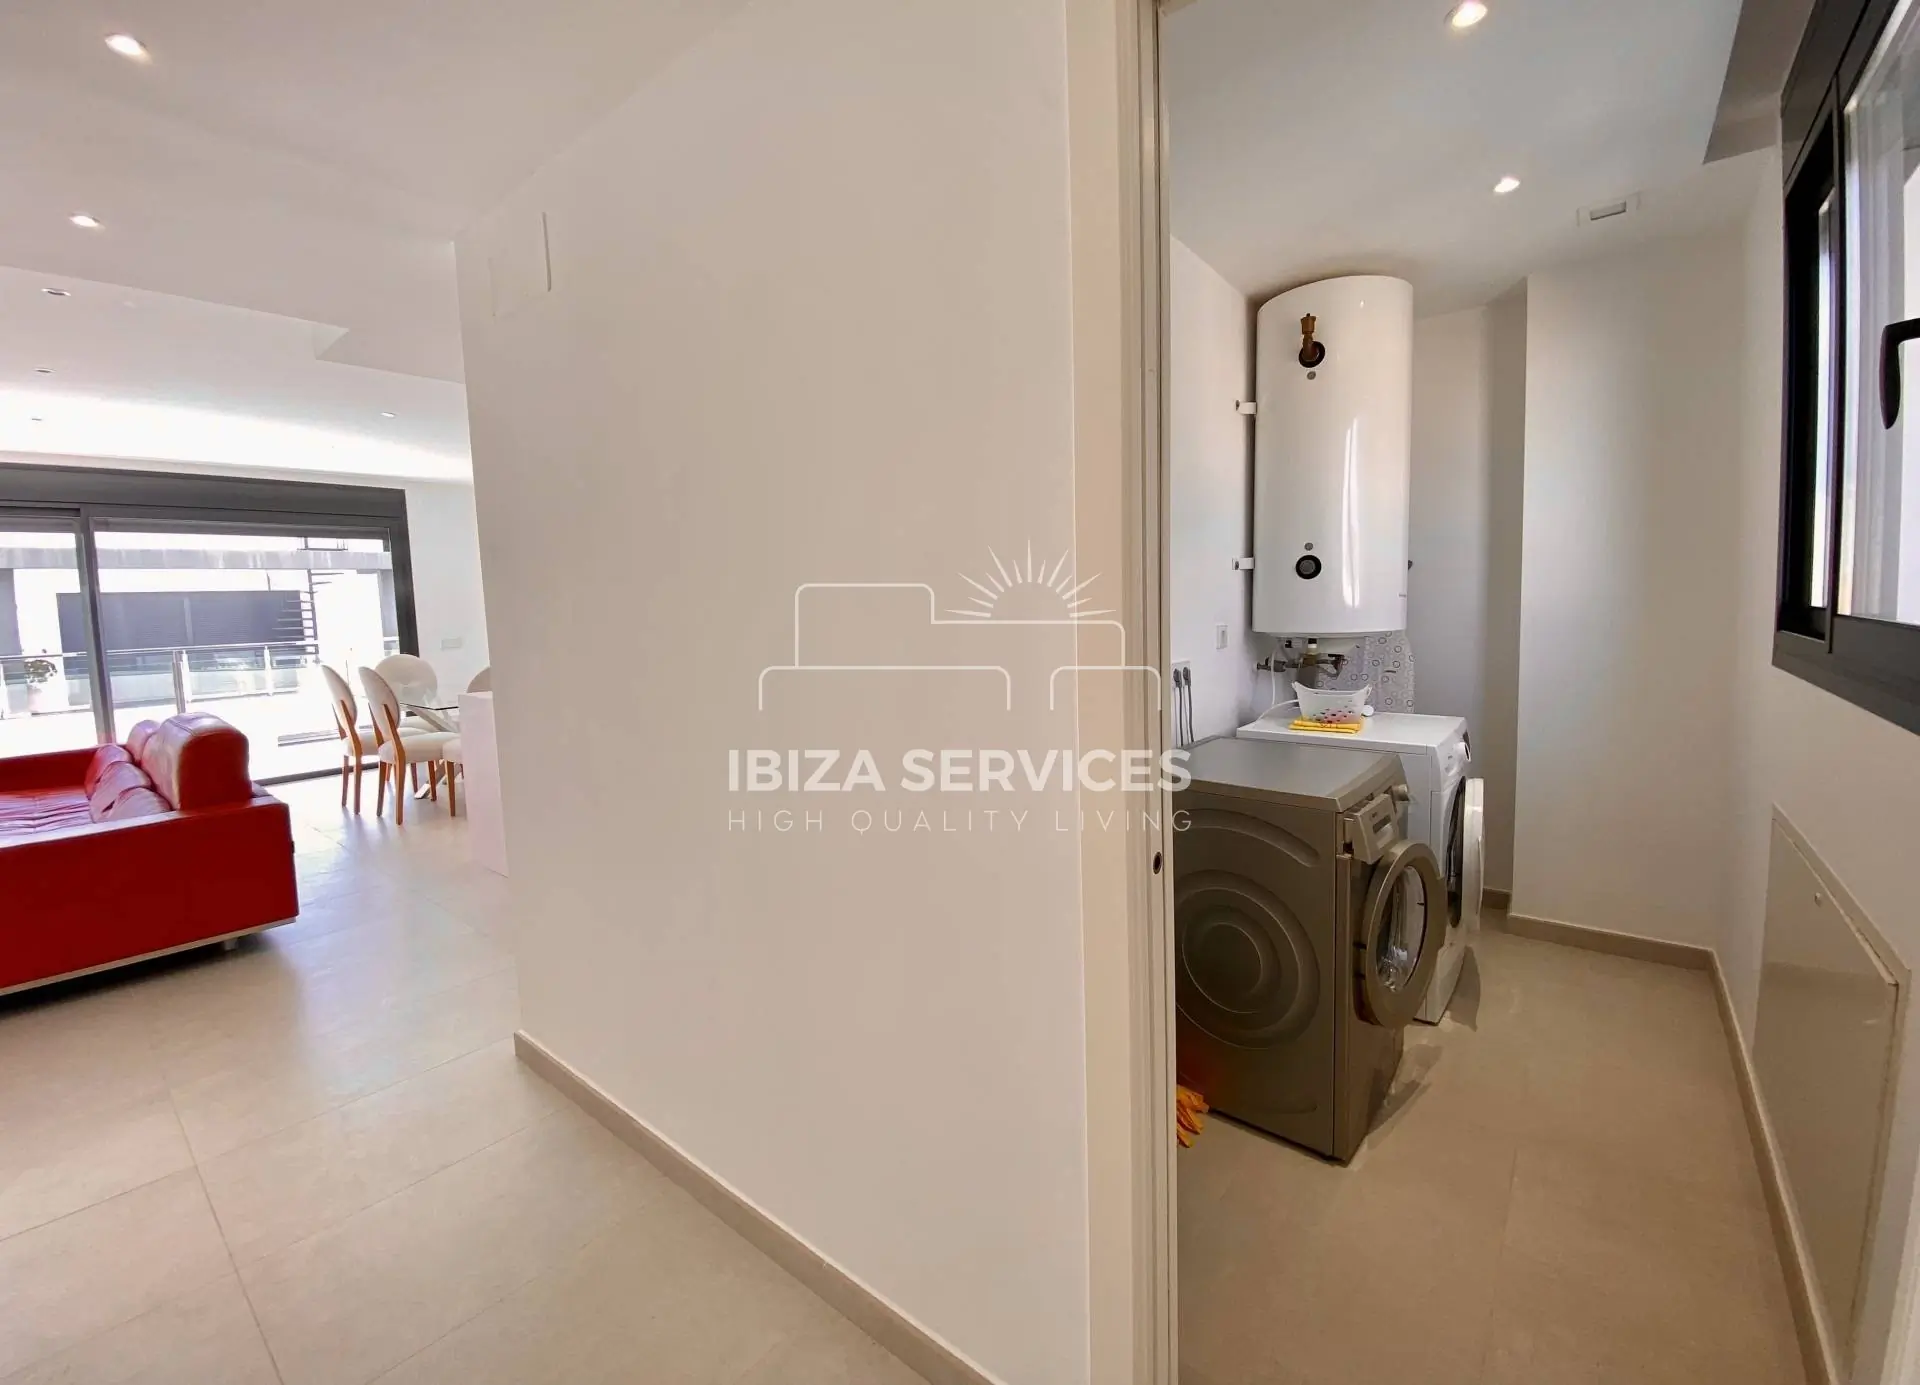 Cómodo ático de tres habitaciones en venta en Santa Eulalia – Ibiza